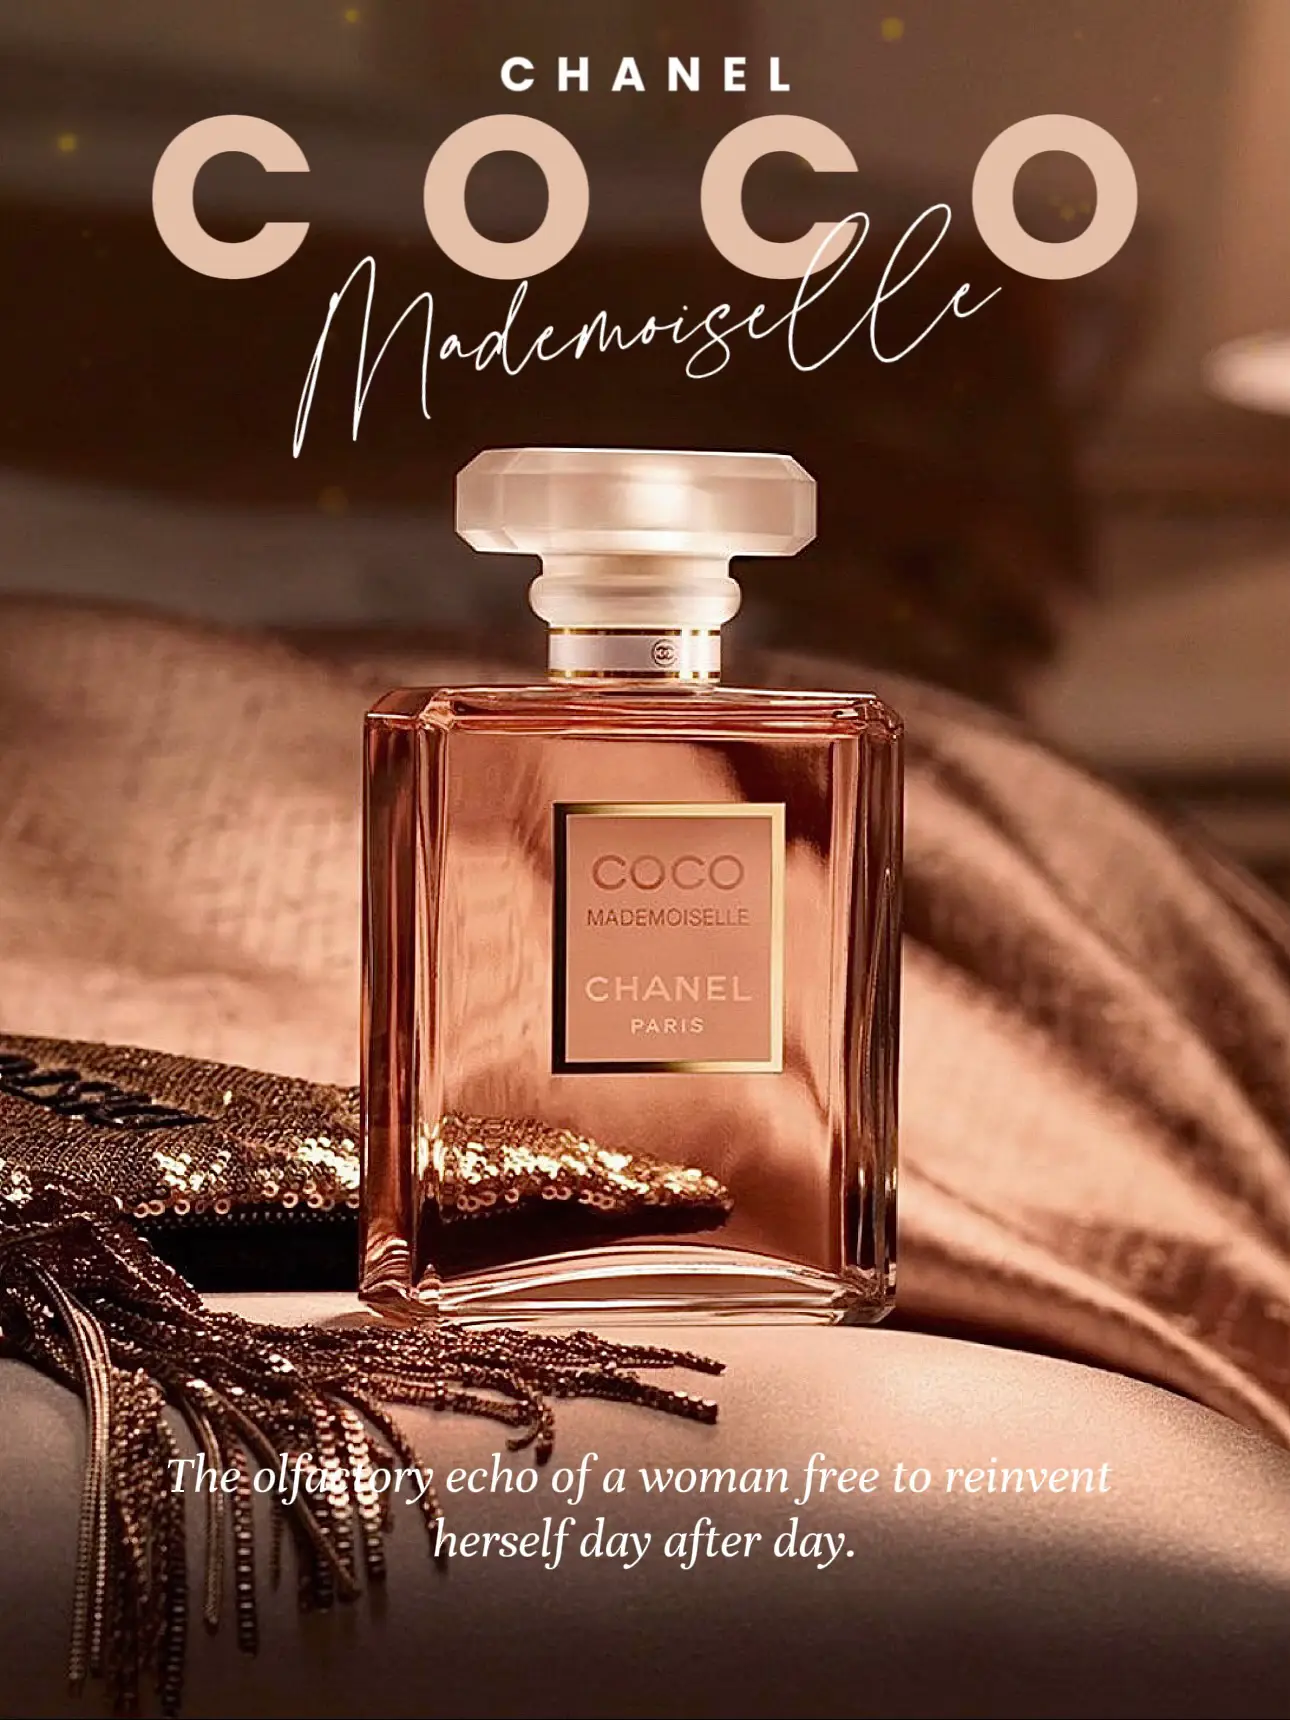 Coco Mademoiselle Eau de Parfum Review: Old, but is it Still Gold?